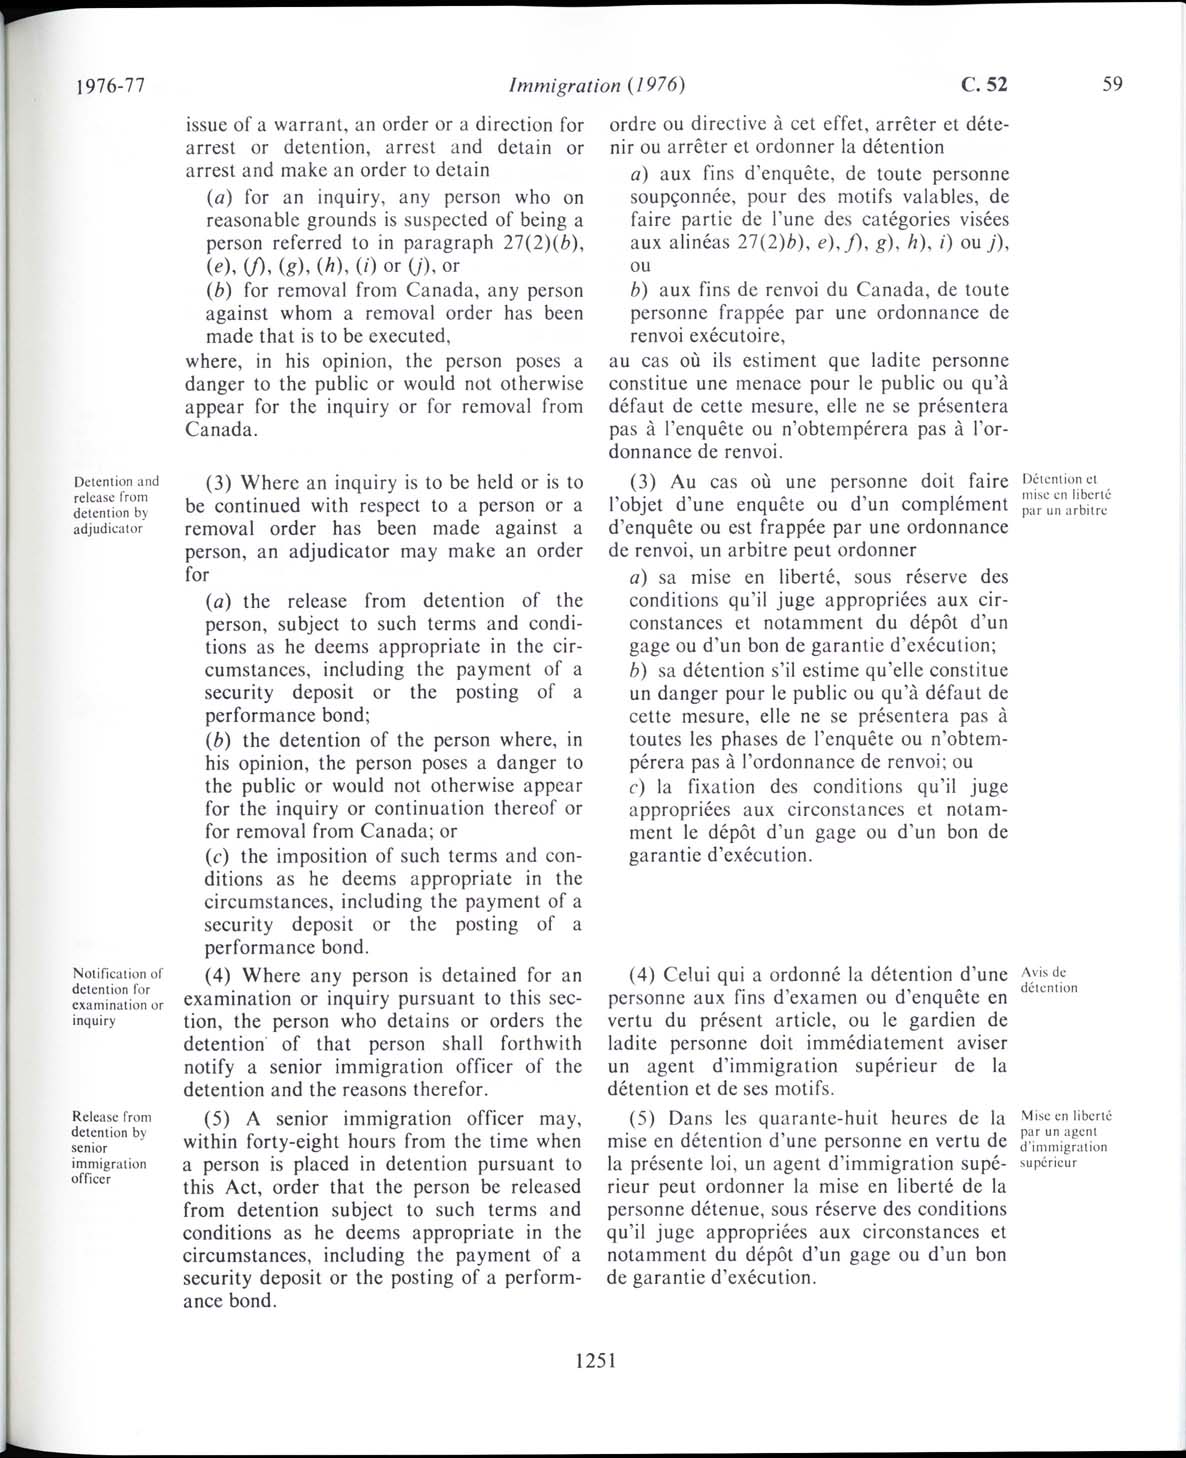 Page 1251 Loi sur l’immigration de 1976